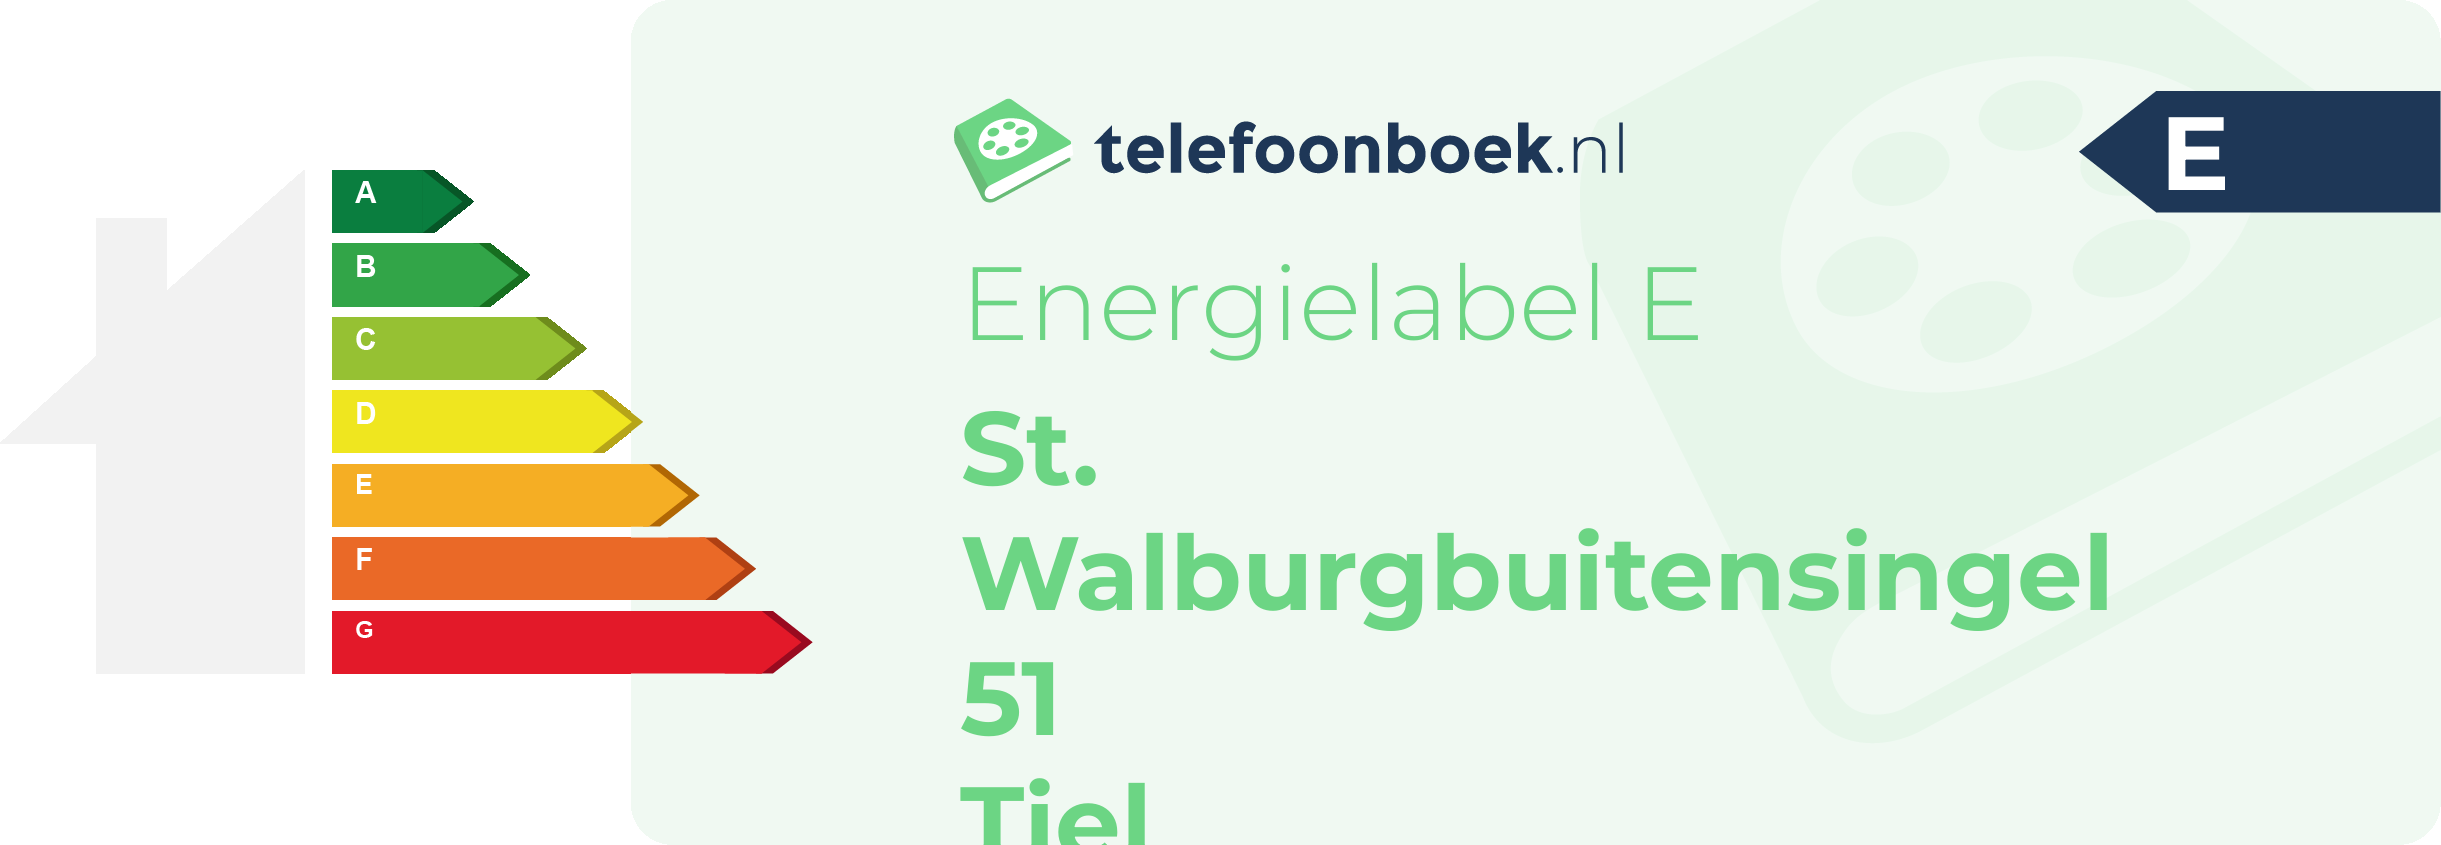 Energielabel St. Walburgbuitensingel 51 Tiel